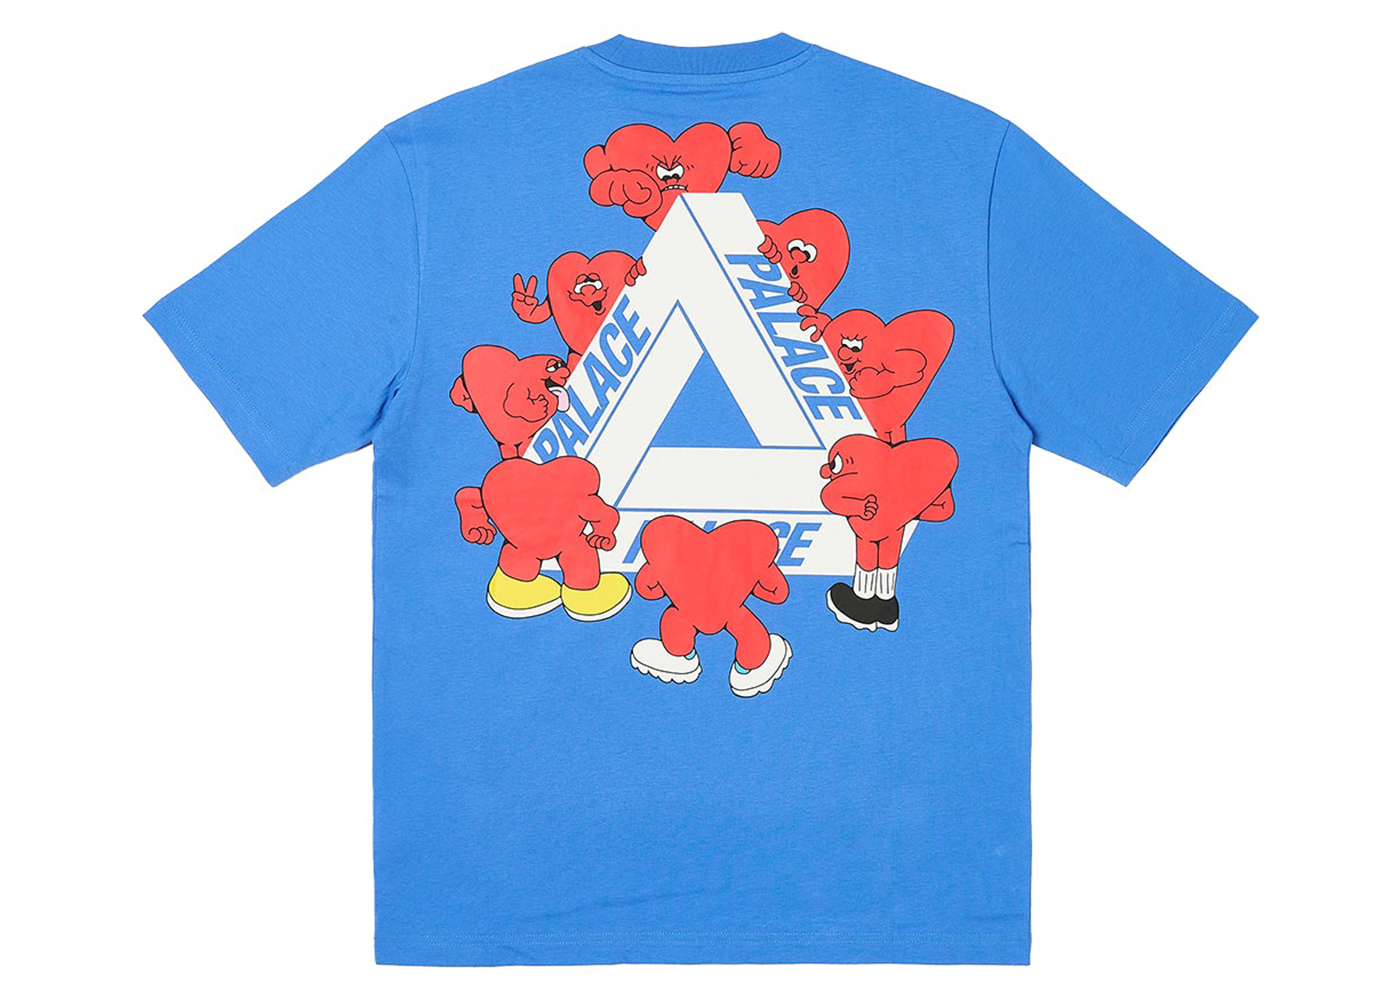 5,800円PALACE Tri-Hearts T-Shirt \